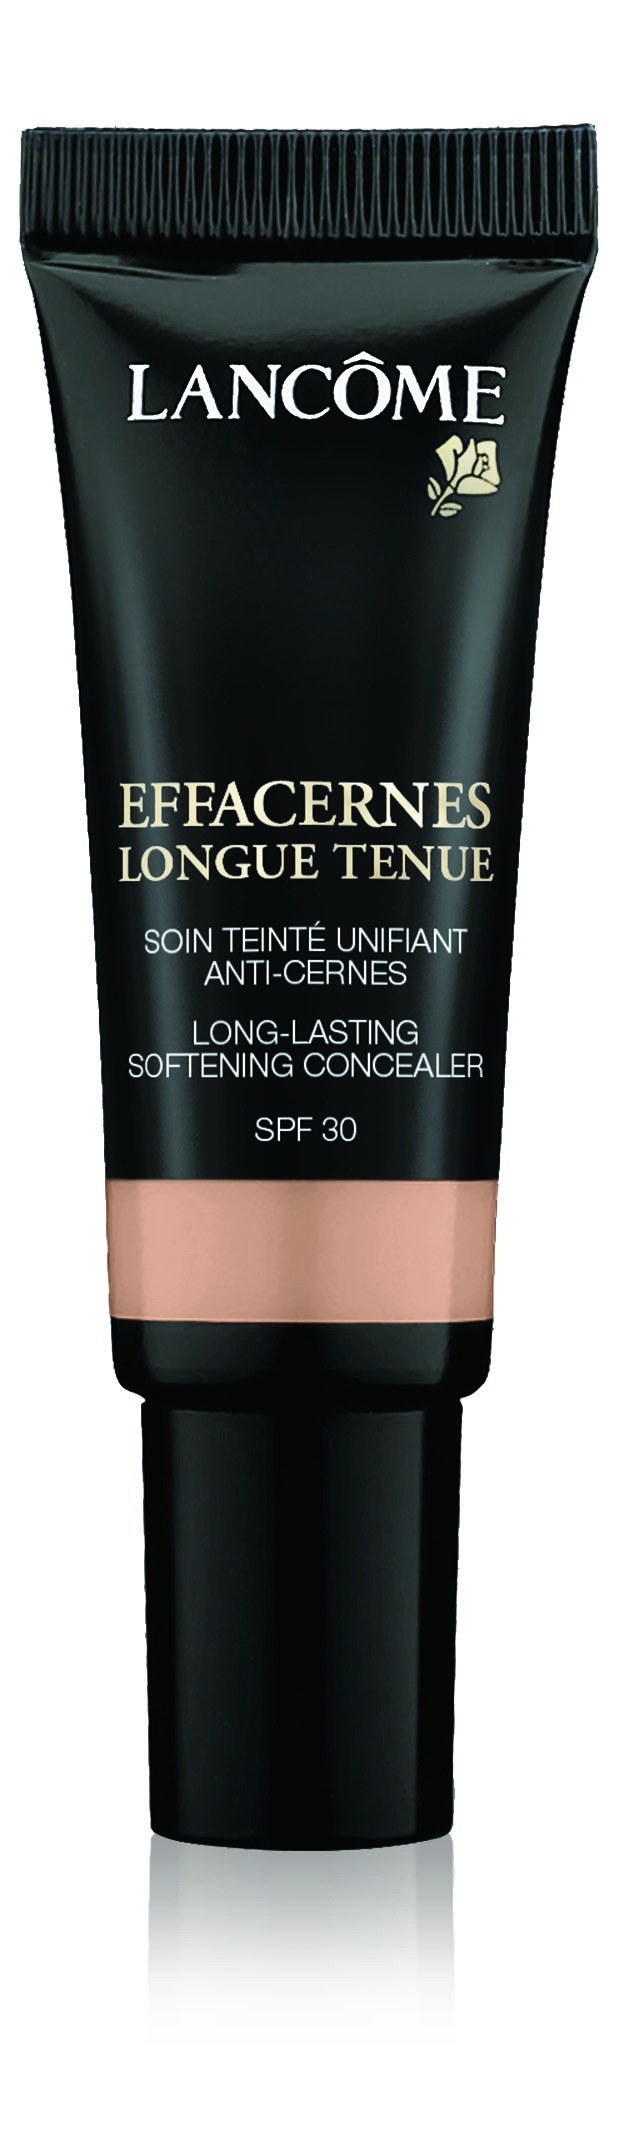 Effacernes Long-Lasting Softening Concealer Spf30, 04 Beige Rosé